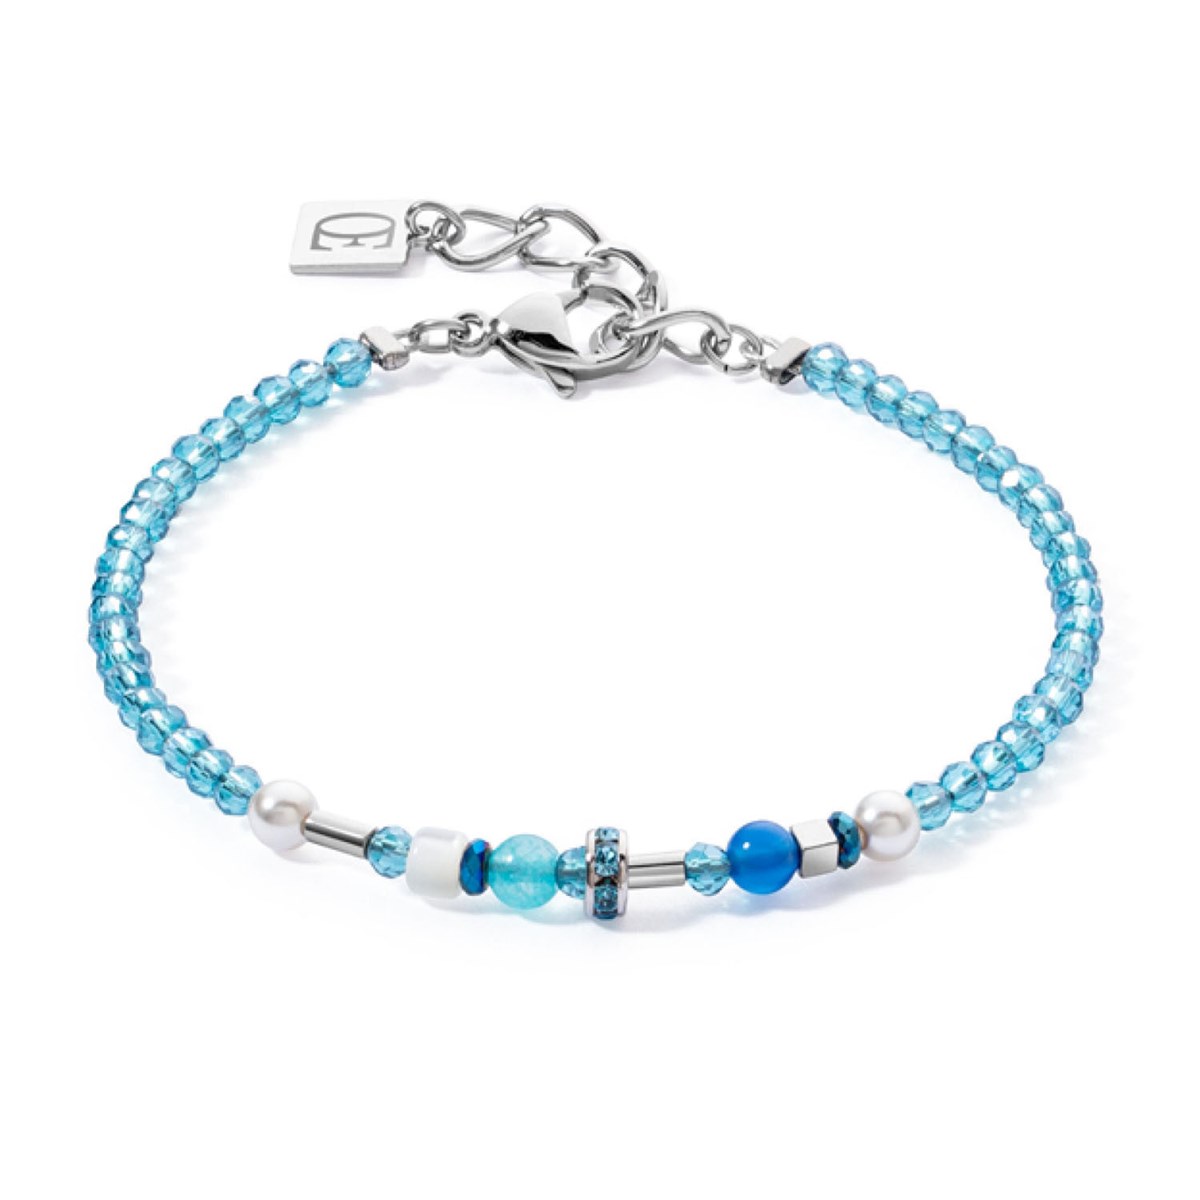 Bracelet Coeur de Lion Princess Spheres Mix
Turquoise